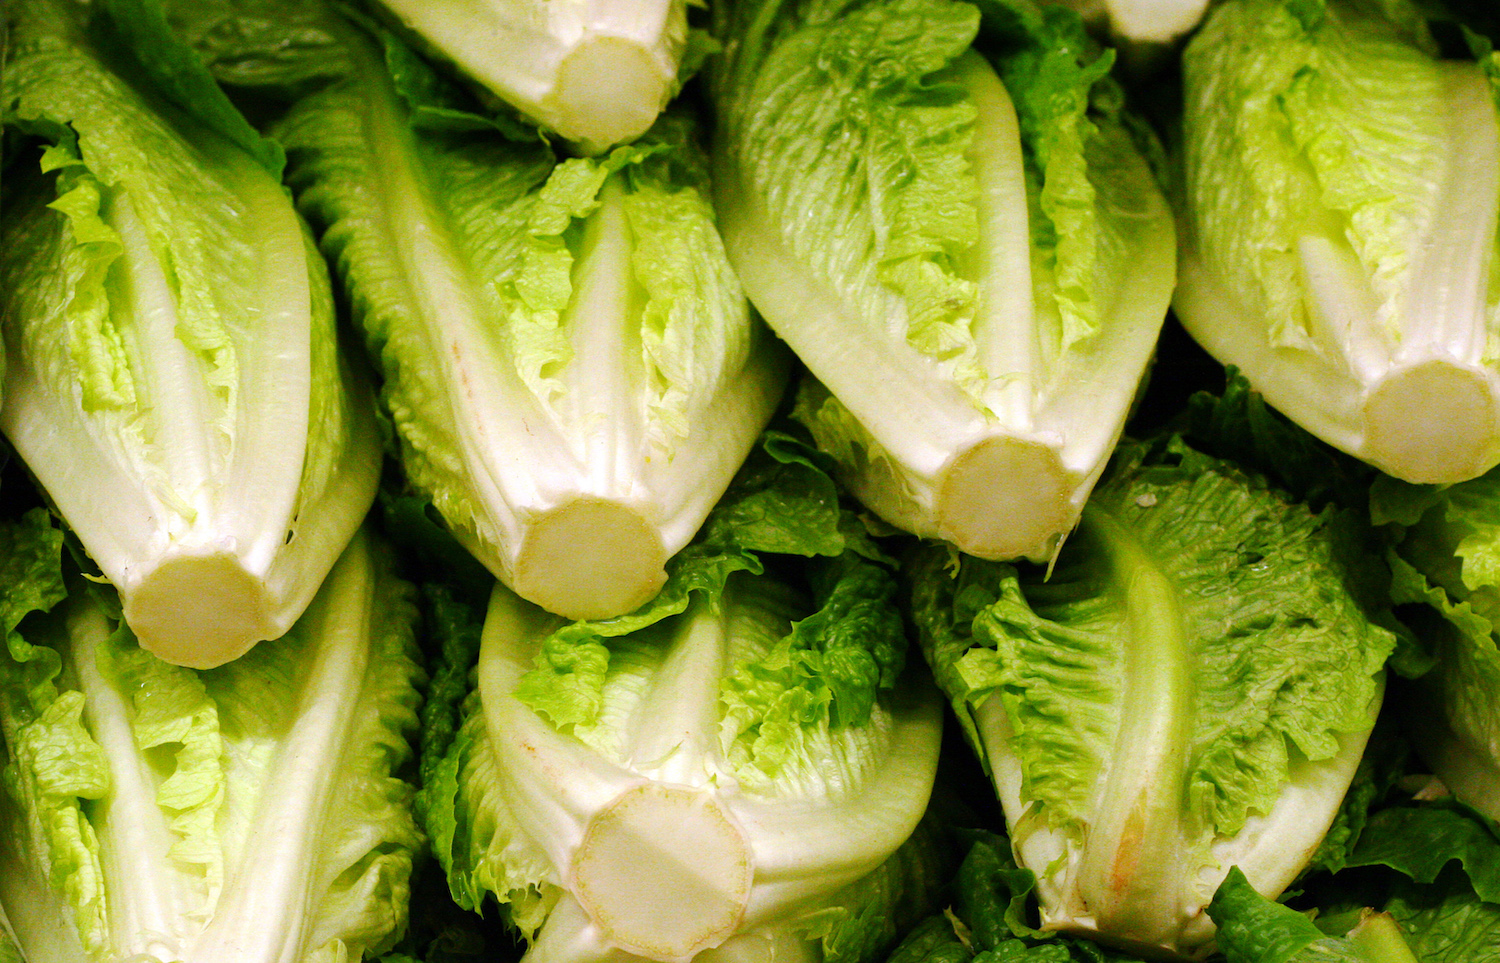 Romaine lettuce heads